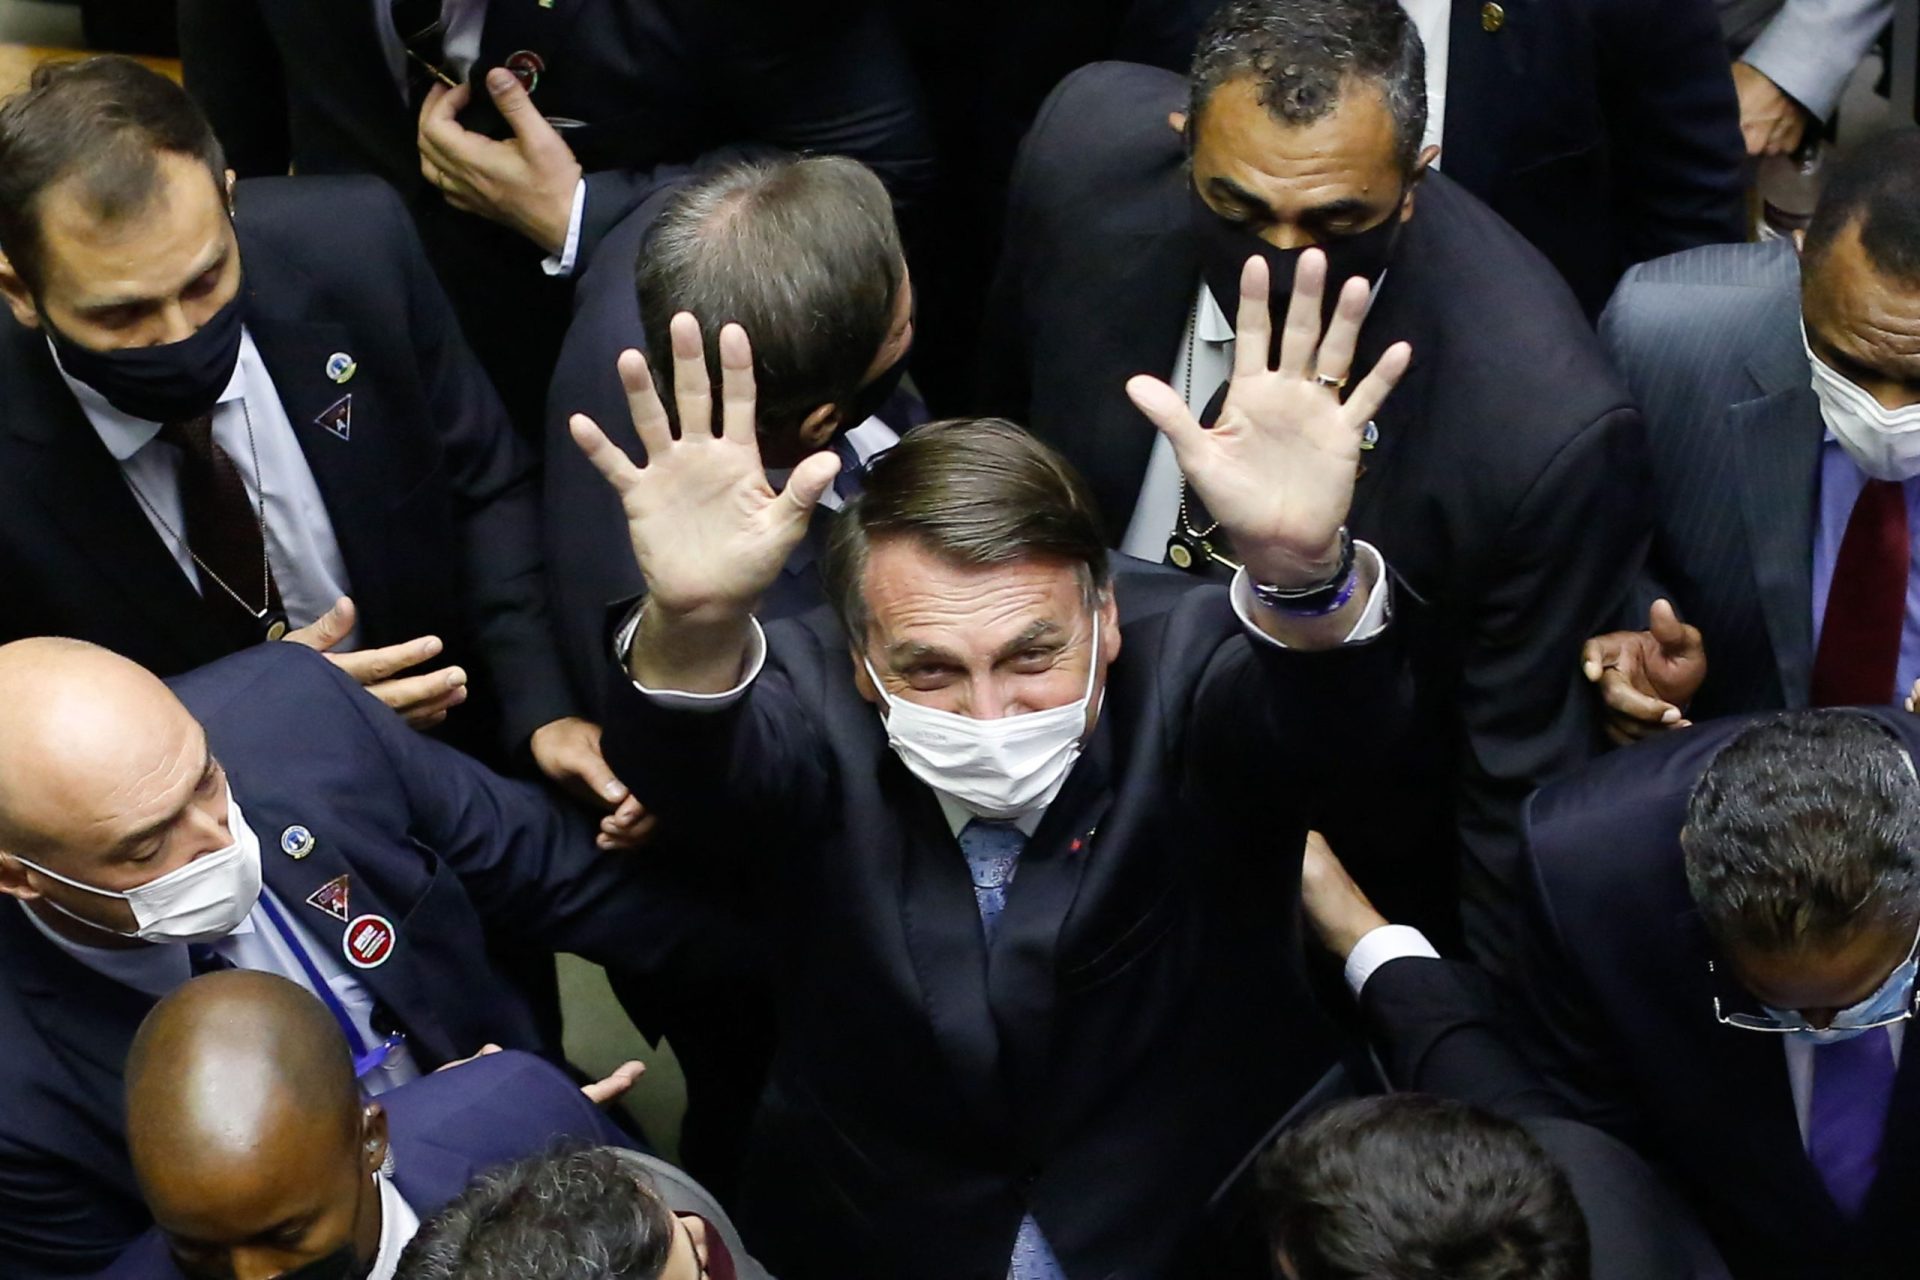 &#8220;Um povo que vota num homem&#8221; como o Lula da Silva &#8220;merece sofrer&#8221;, diz Bolsonaro